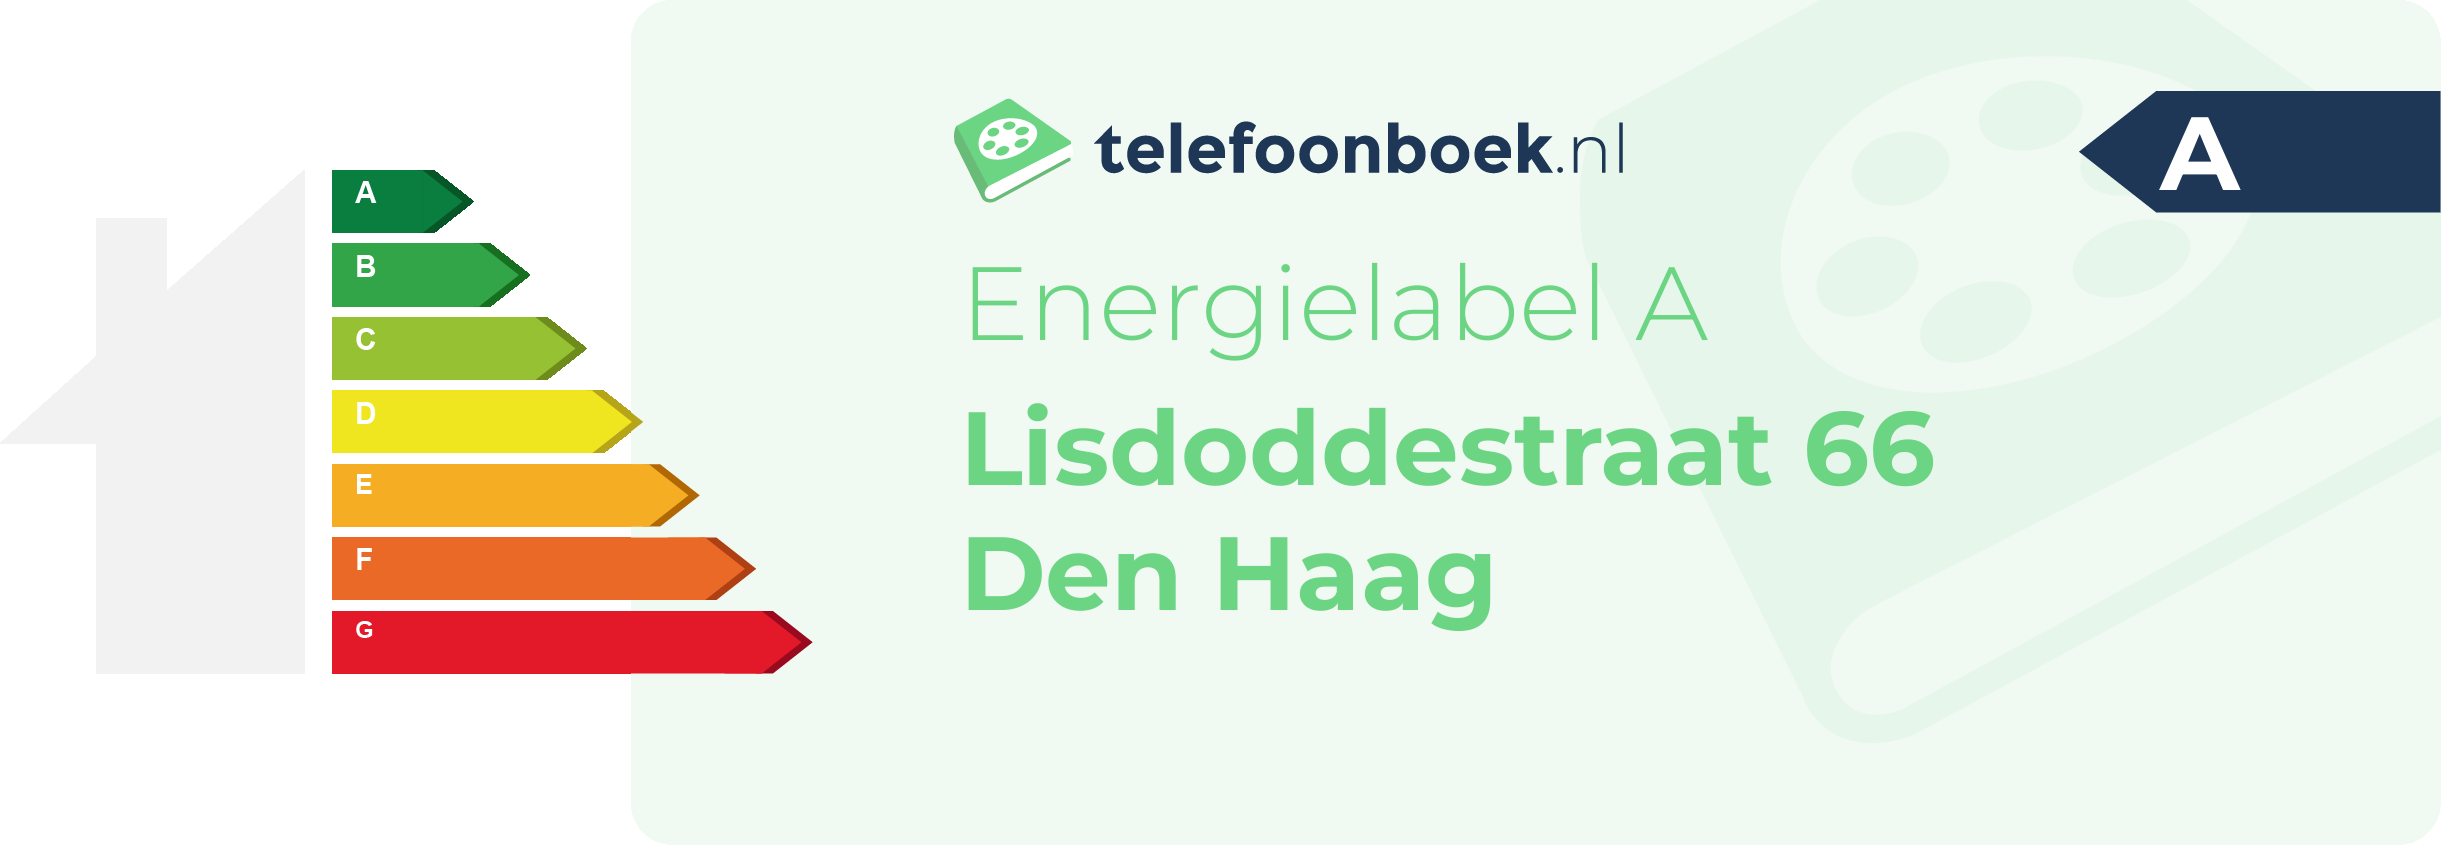 Energielabel Lisdoddestraat 66 Den Haag